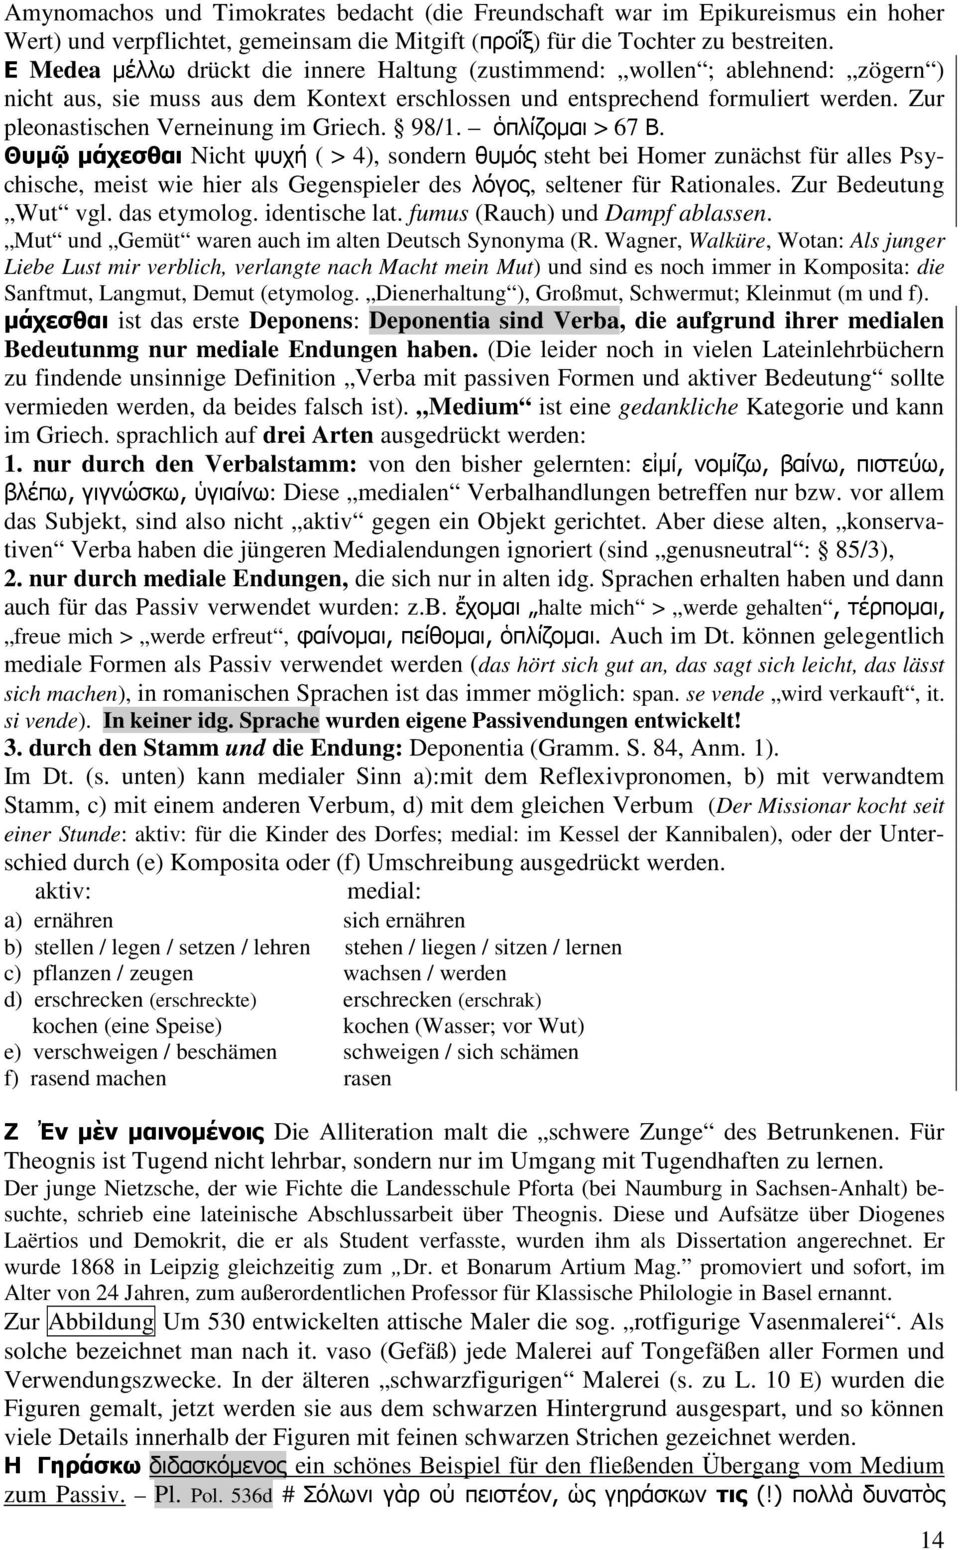 Zur pleonastischen Verneinung im Griech. 98/1. ὁπλίζοµαι > 67 Β.